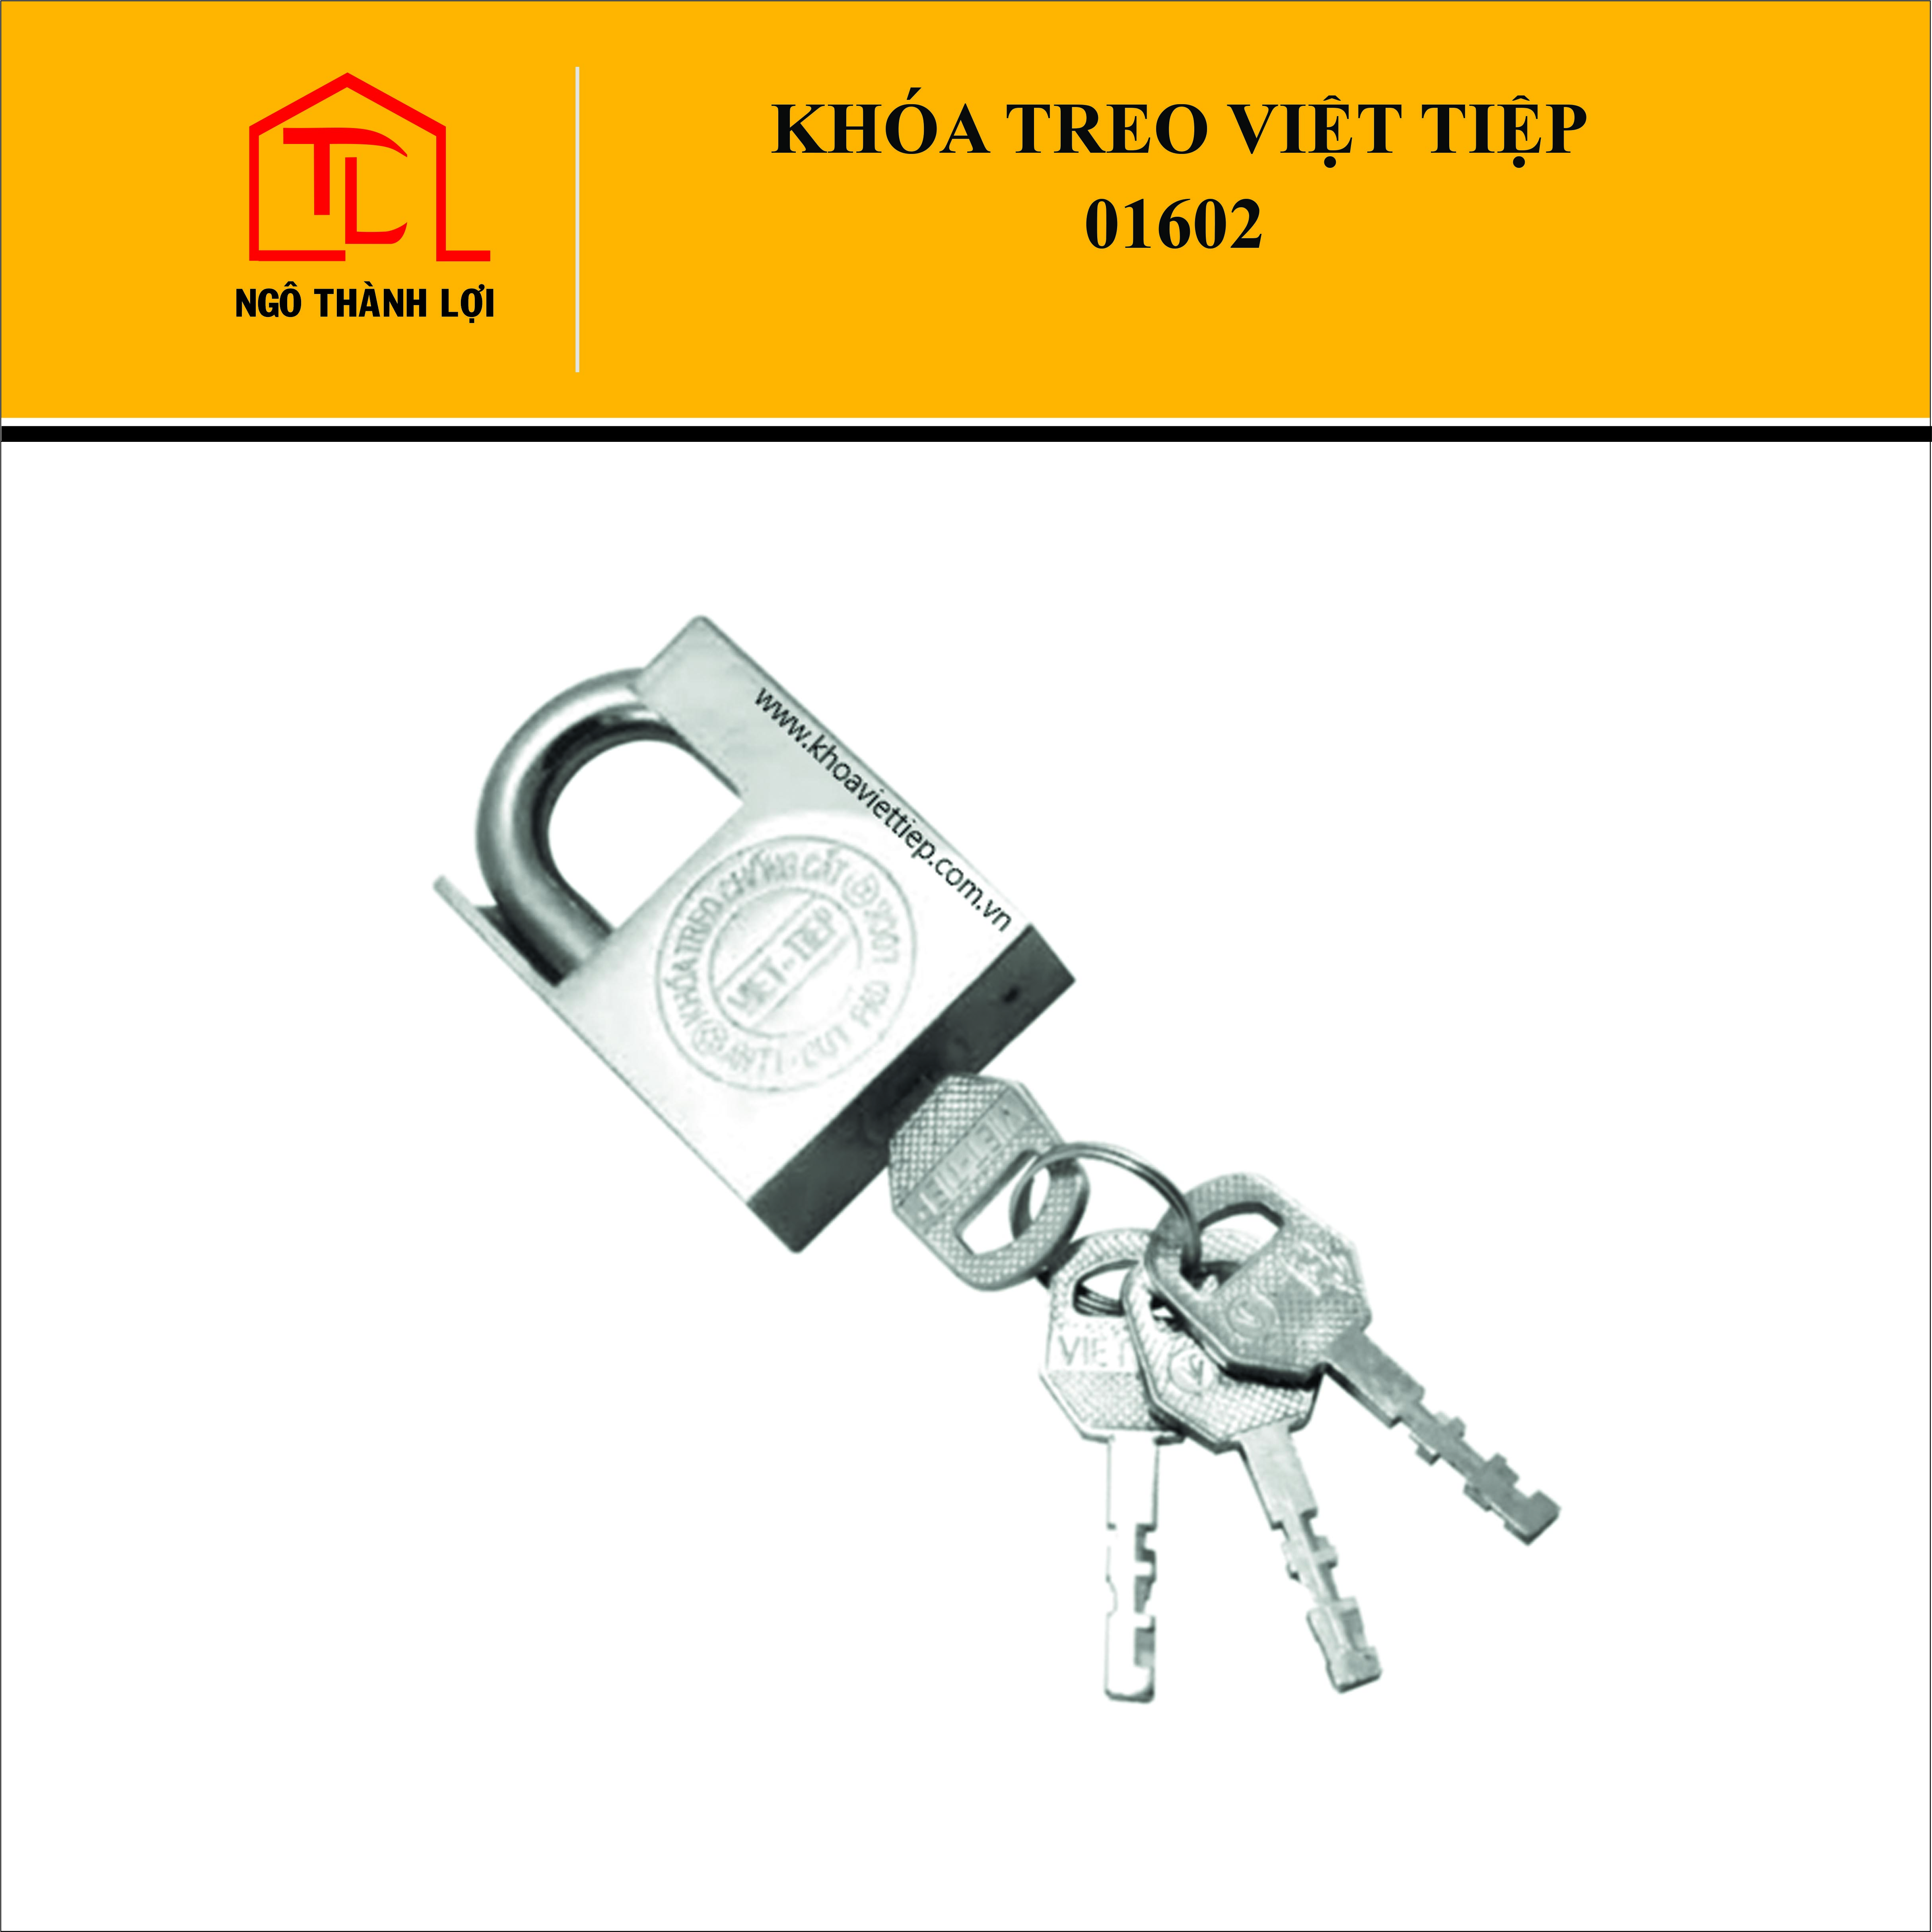 Ổ khóa cửa treo Việt Tiệp hợp kim chống cắt màu trắng 01402 / 01502 / 01602 được làm từ chất liệu hợp kim thép cao cấp, chống cắt và có độ bền cao,…